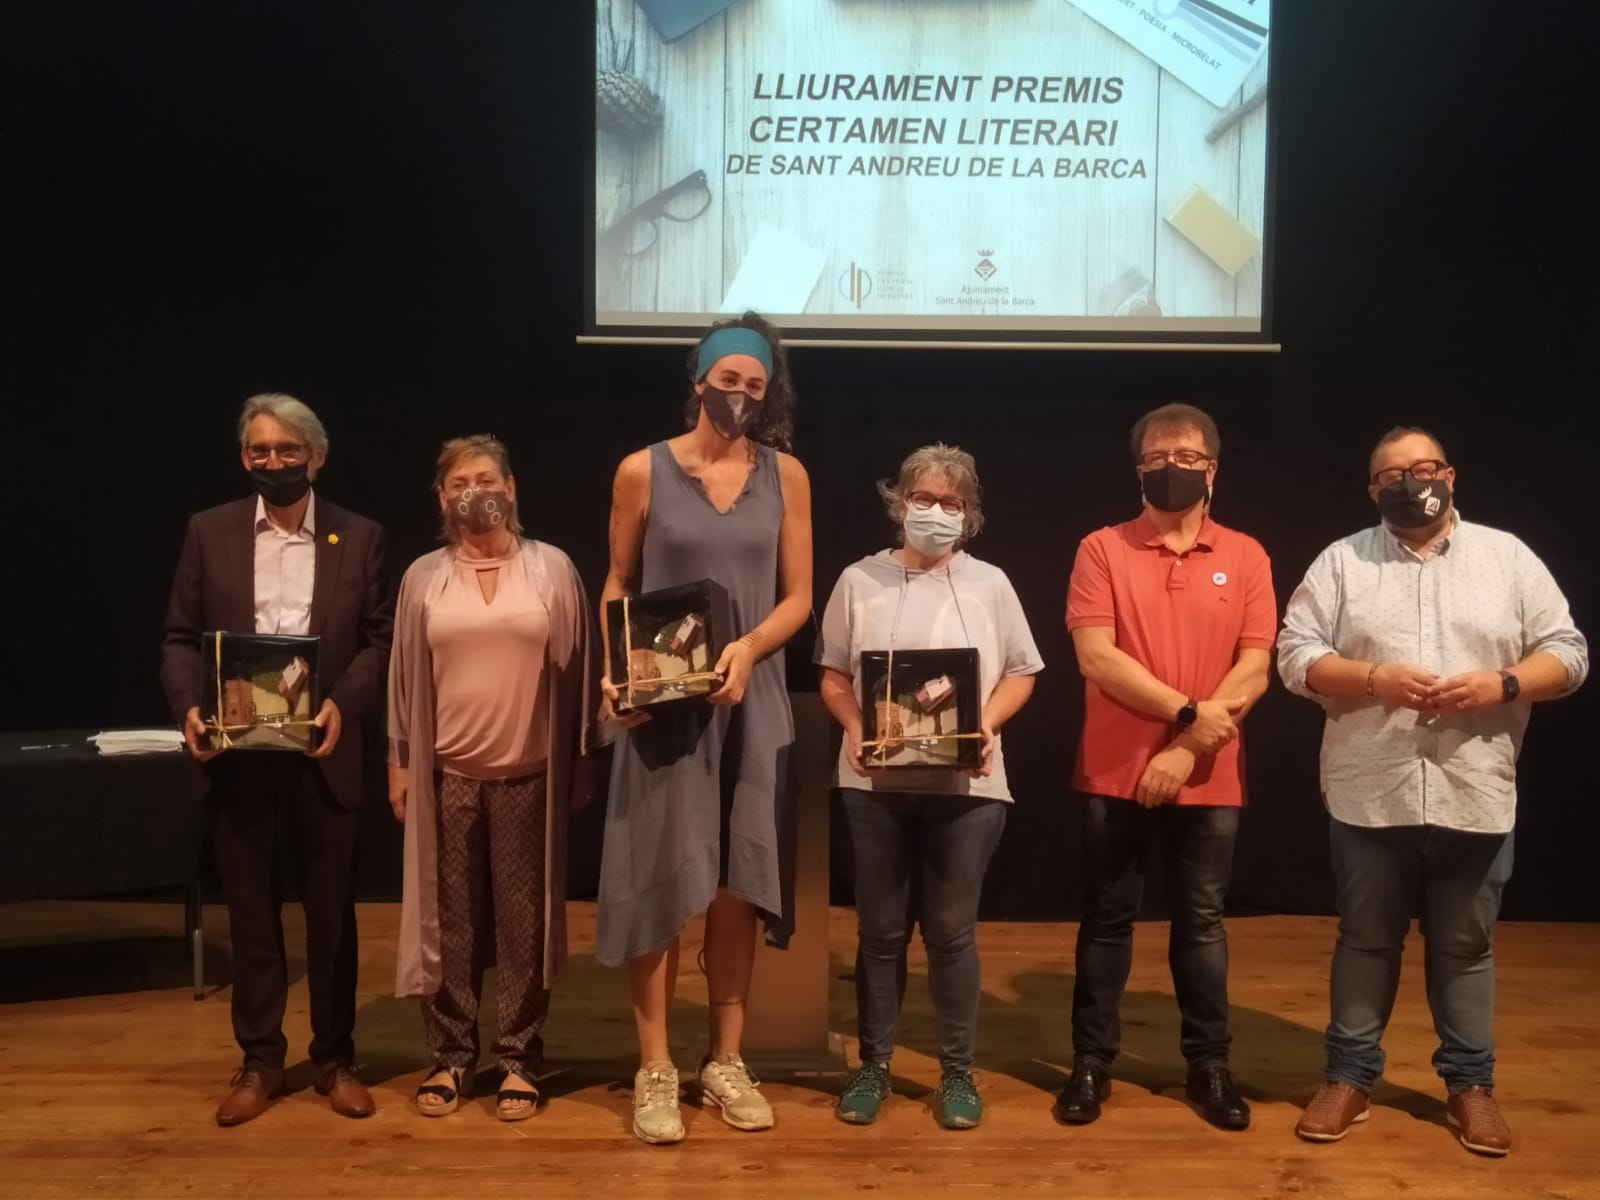 Lliurament dels premis del Certamen Literari Ciutat de Sant Andreu de la Barca